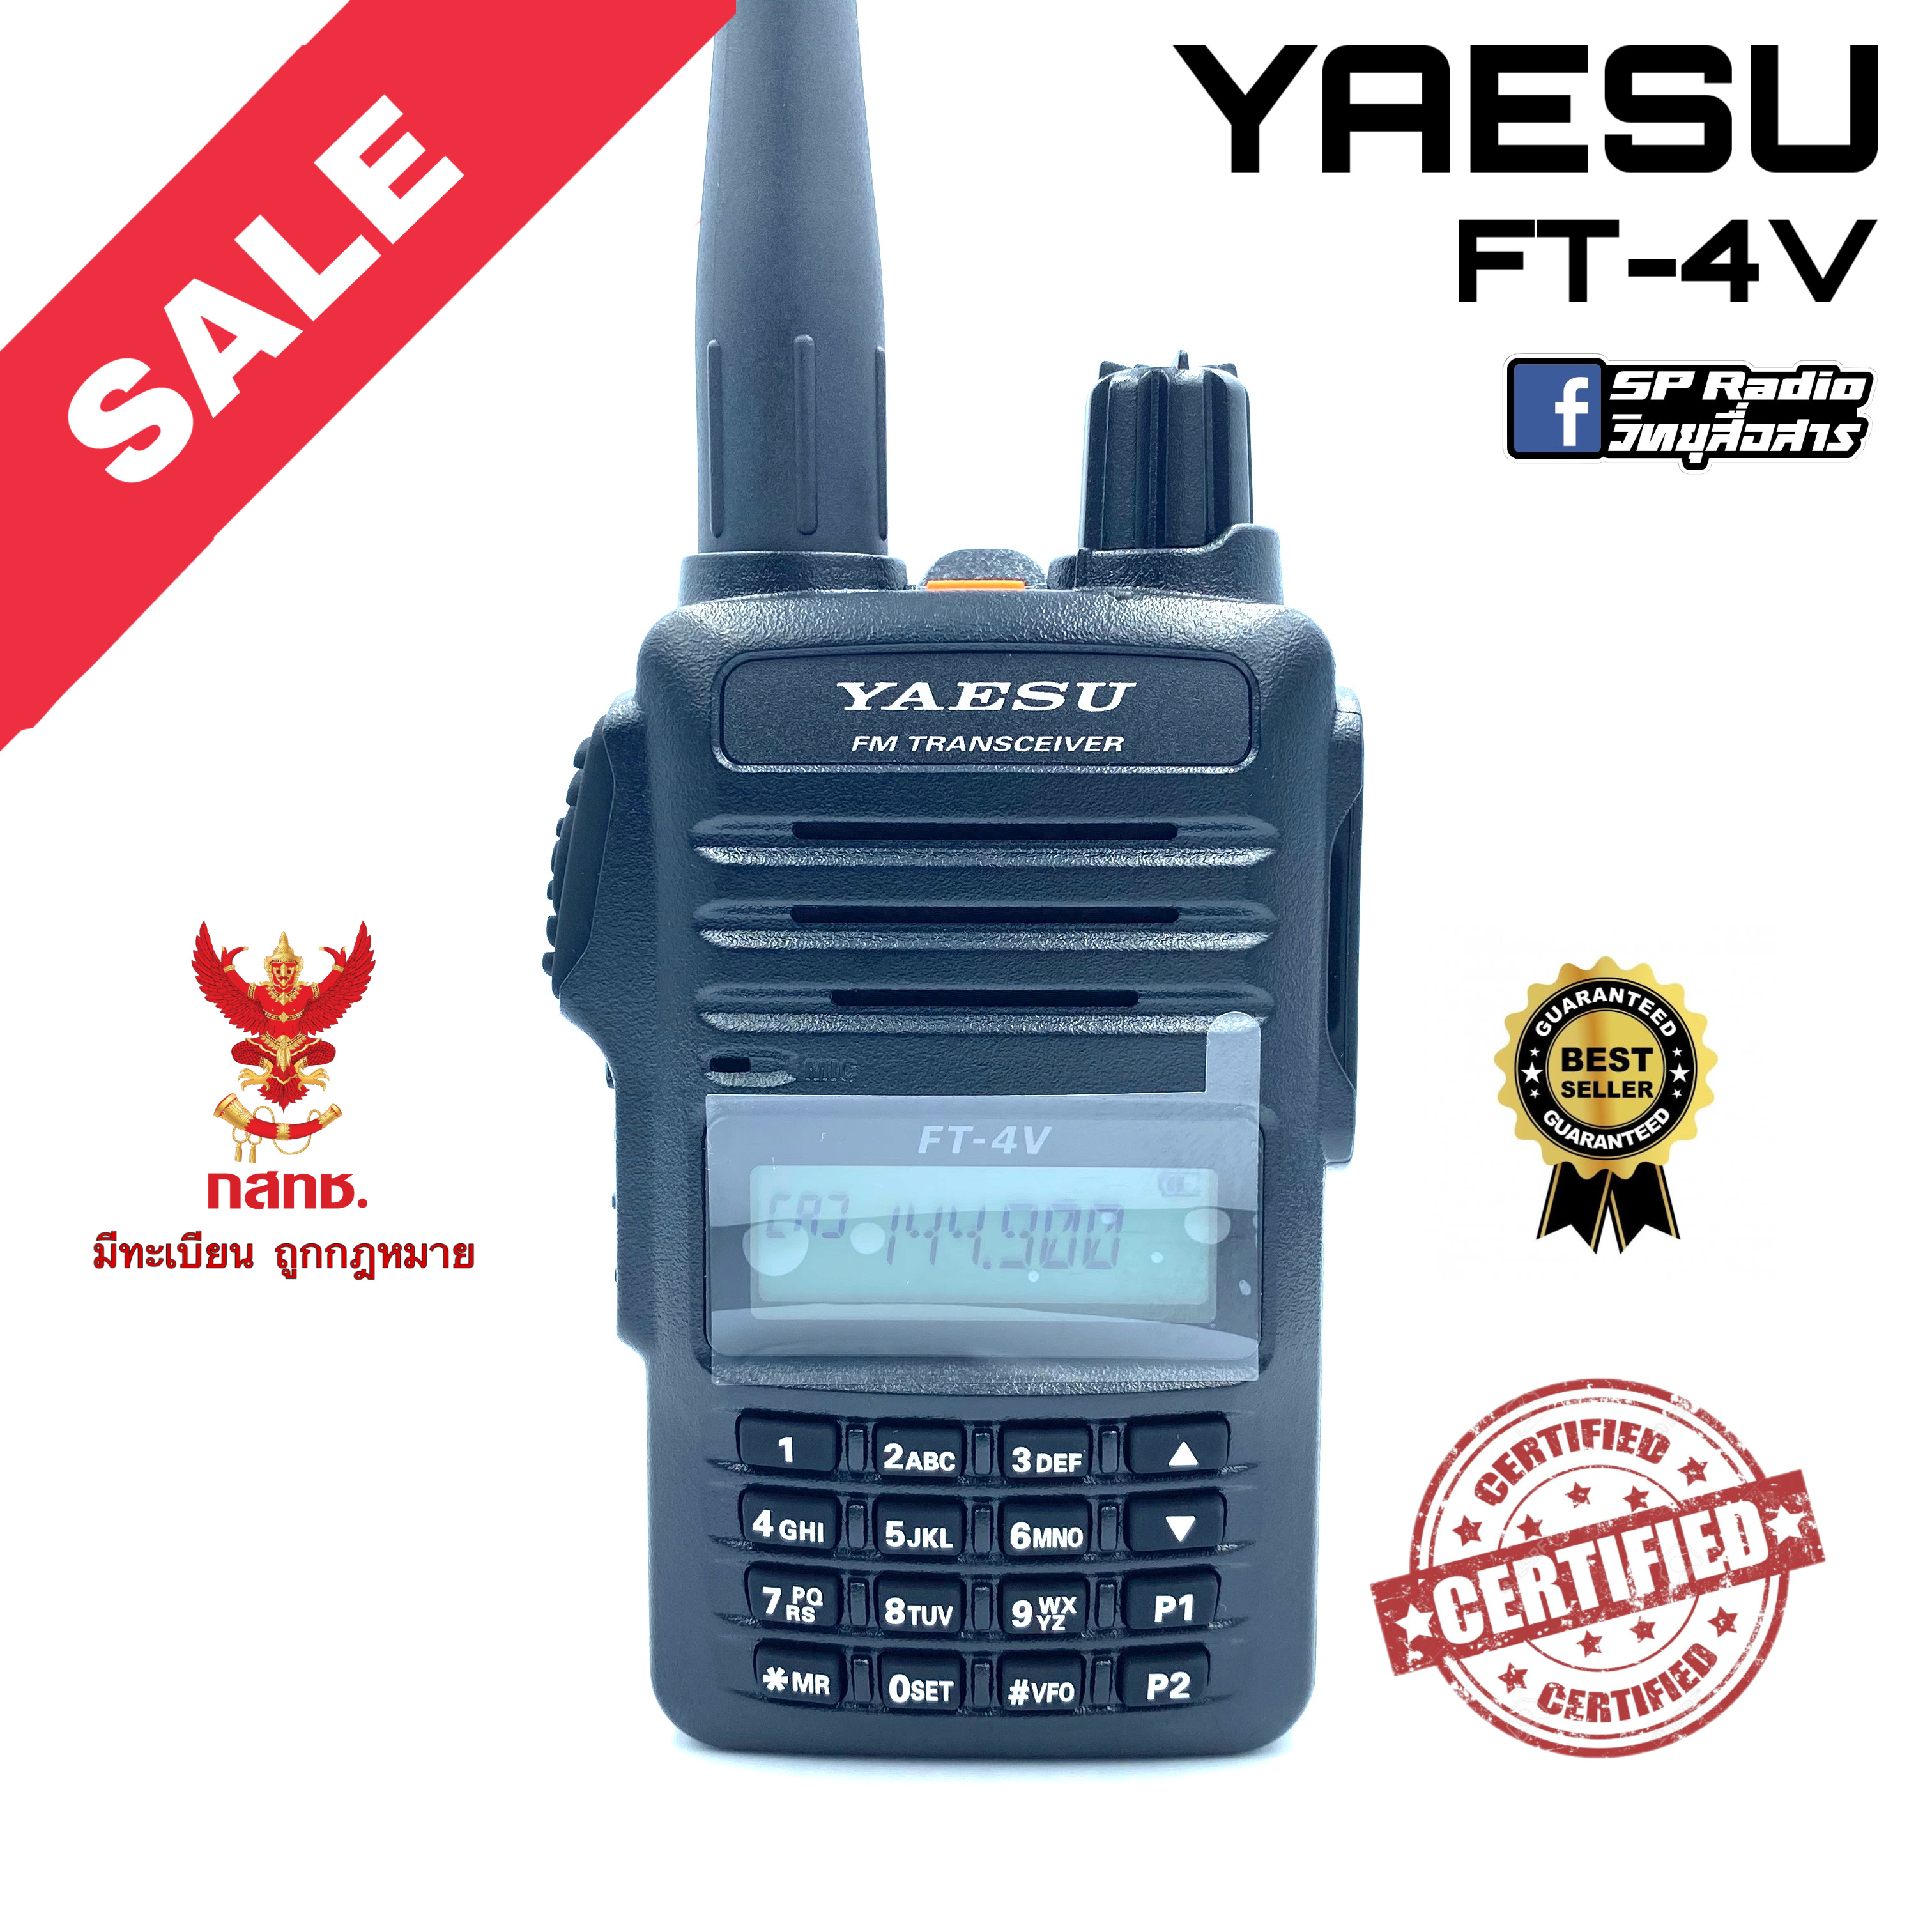 วิทยุสื่อสาร Yaesu รุ่น FT-4V สีดำ (มีทะเบียน ถูกกฎหมาย)